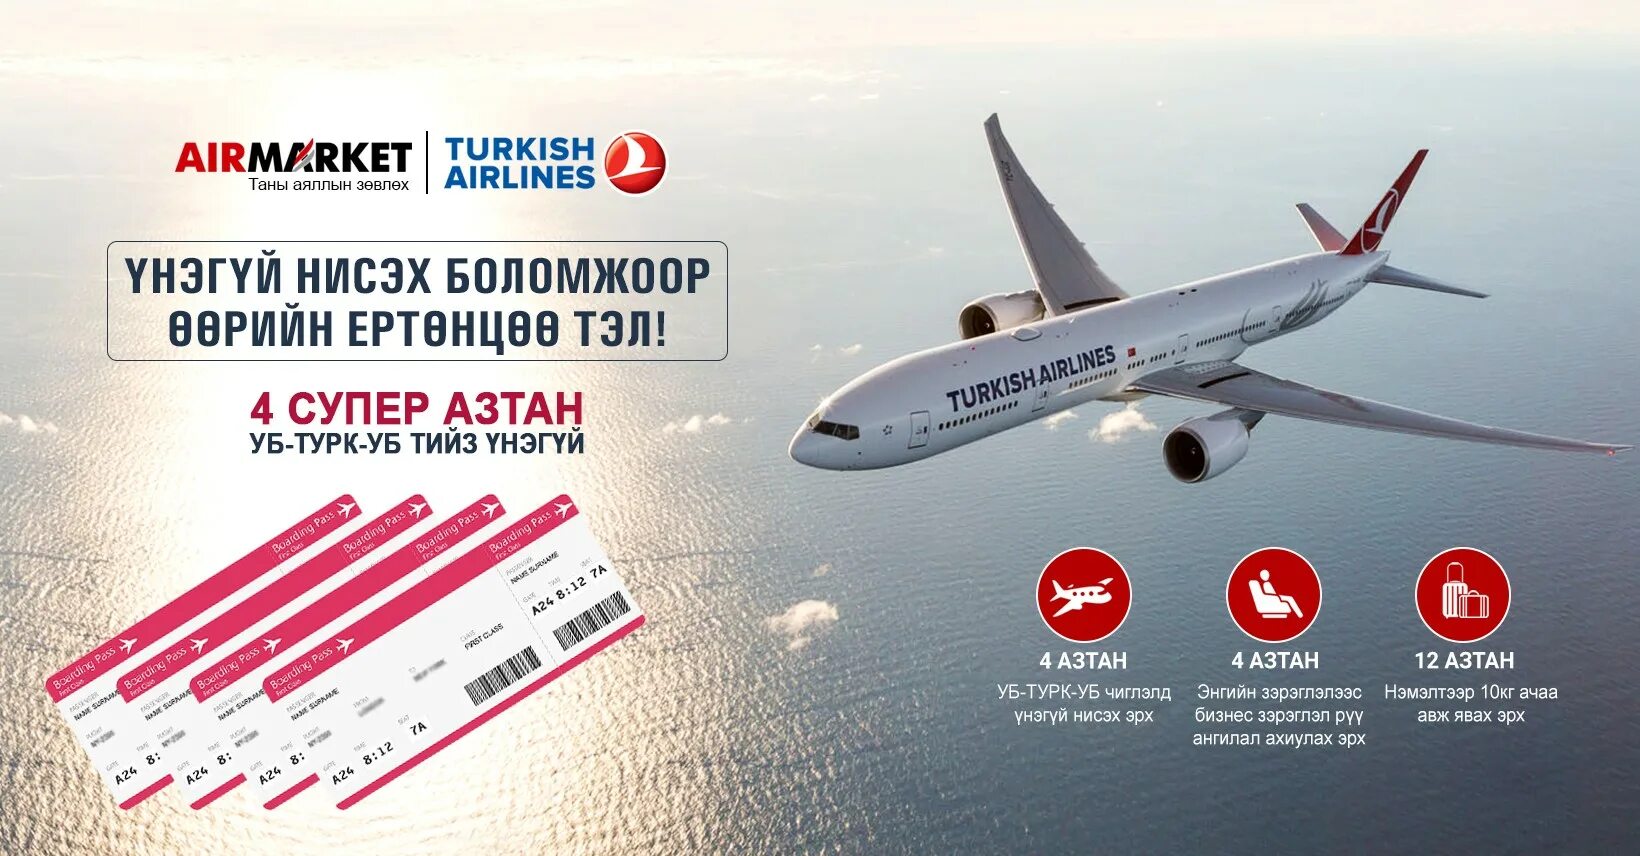 Карта Туркиш Эйрлайнс. Туркиш Эйрлайнс ТК 3953. Форма турецких авиалиний. Набор в Туркиш Эйрлайнс. Сайты турецких авиакомпаний